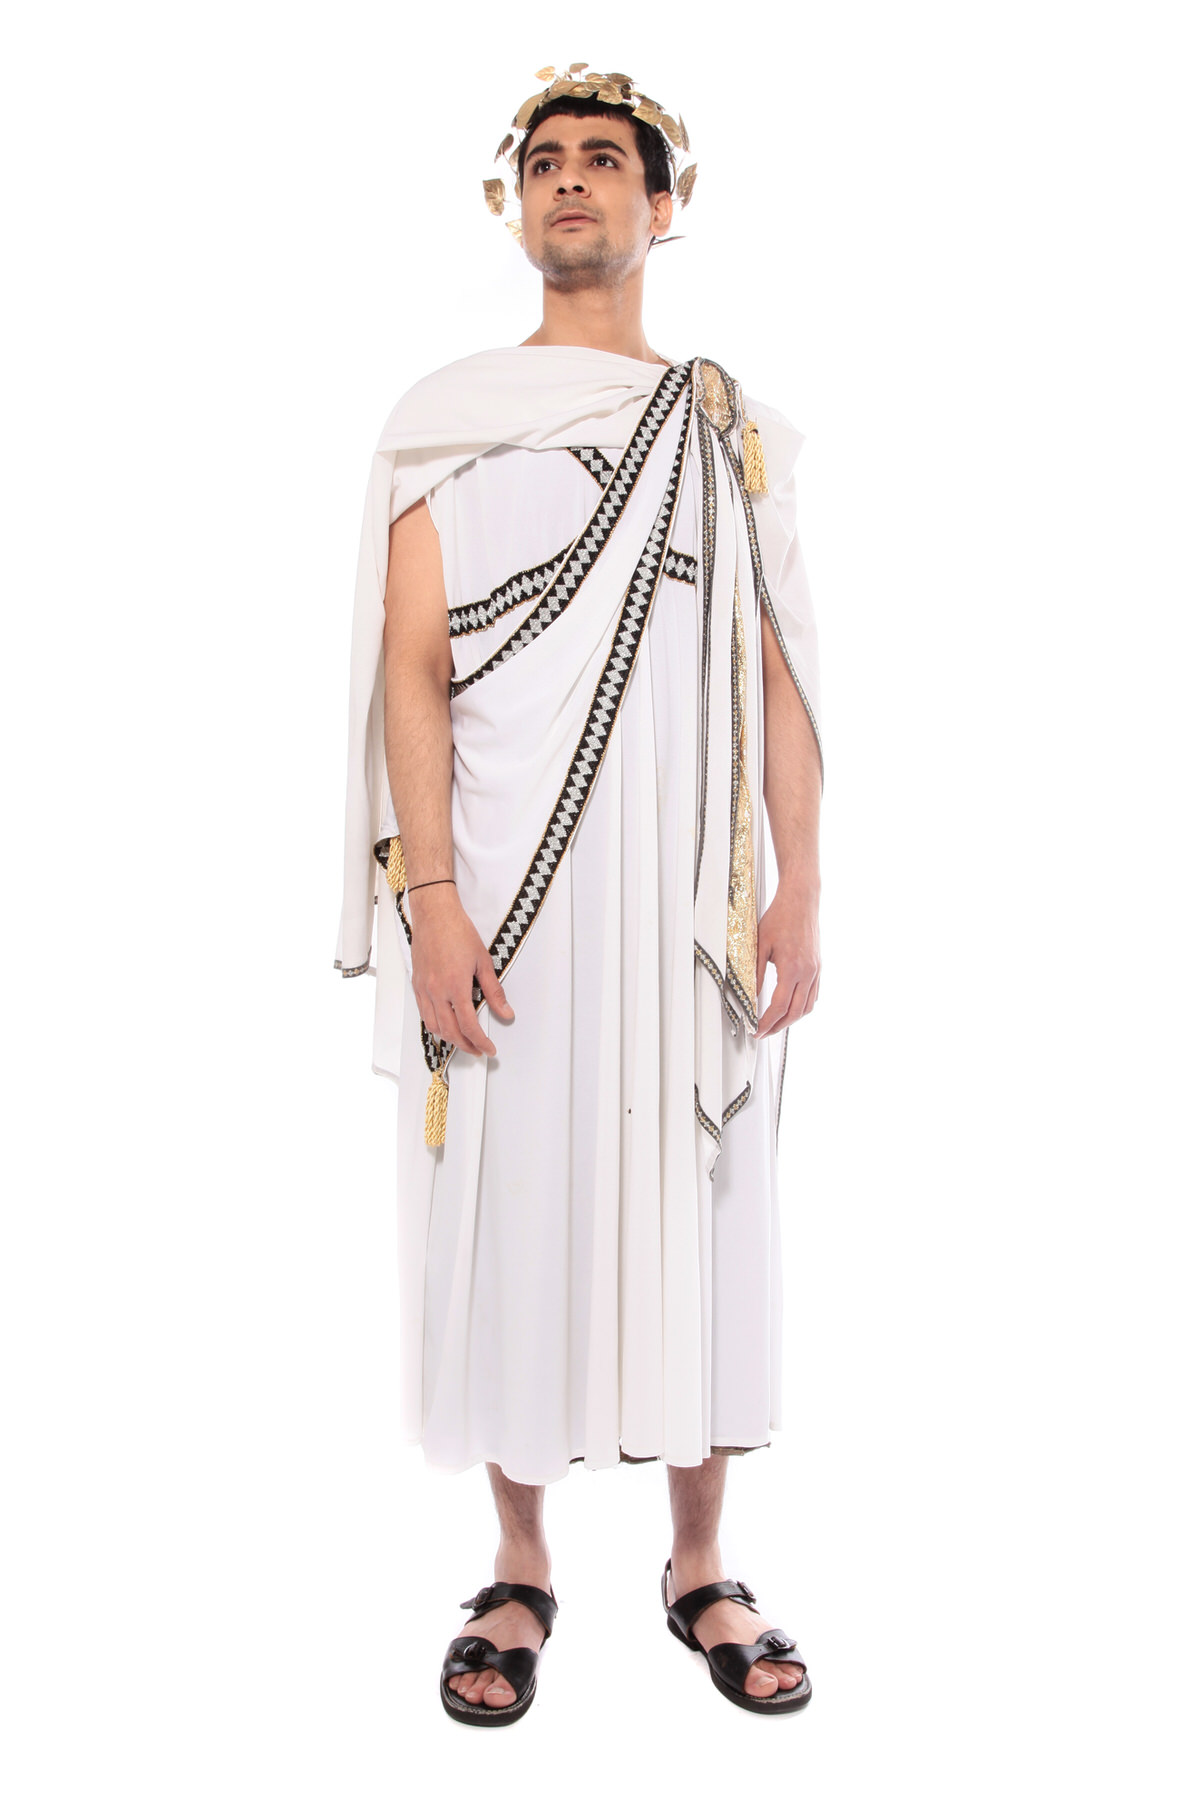 ROMAN EMPEROR COSTUME W LONG WHITE TOGA